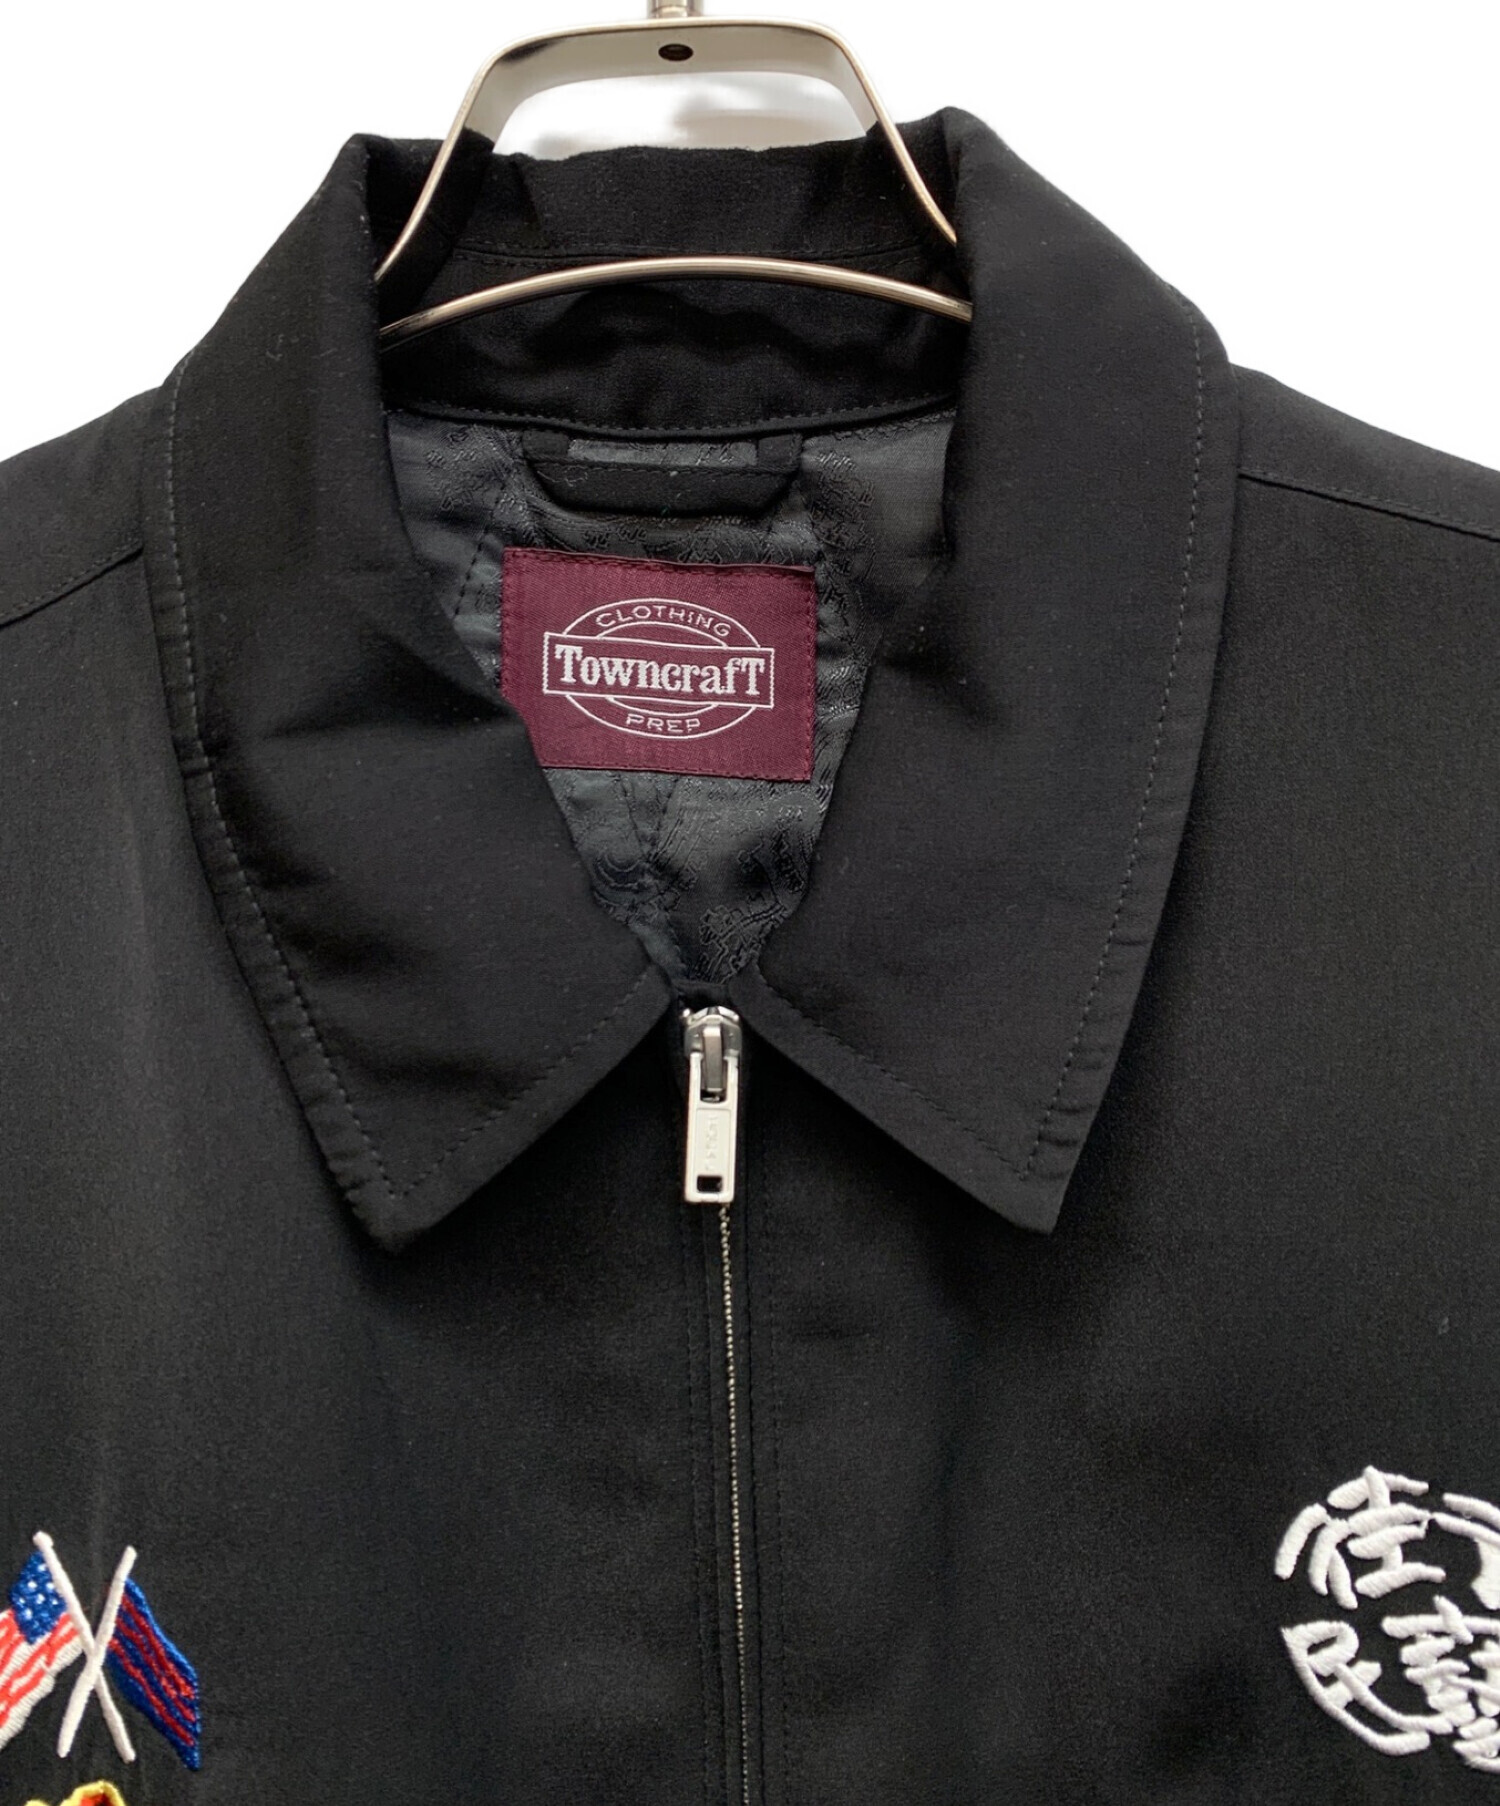 TOWN CRAFT (タウンクラフト) スーベニアジャケット ブラック サイズ:M